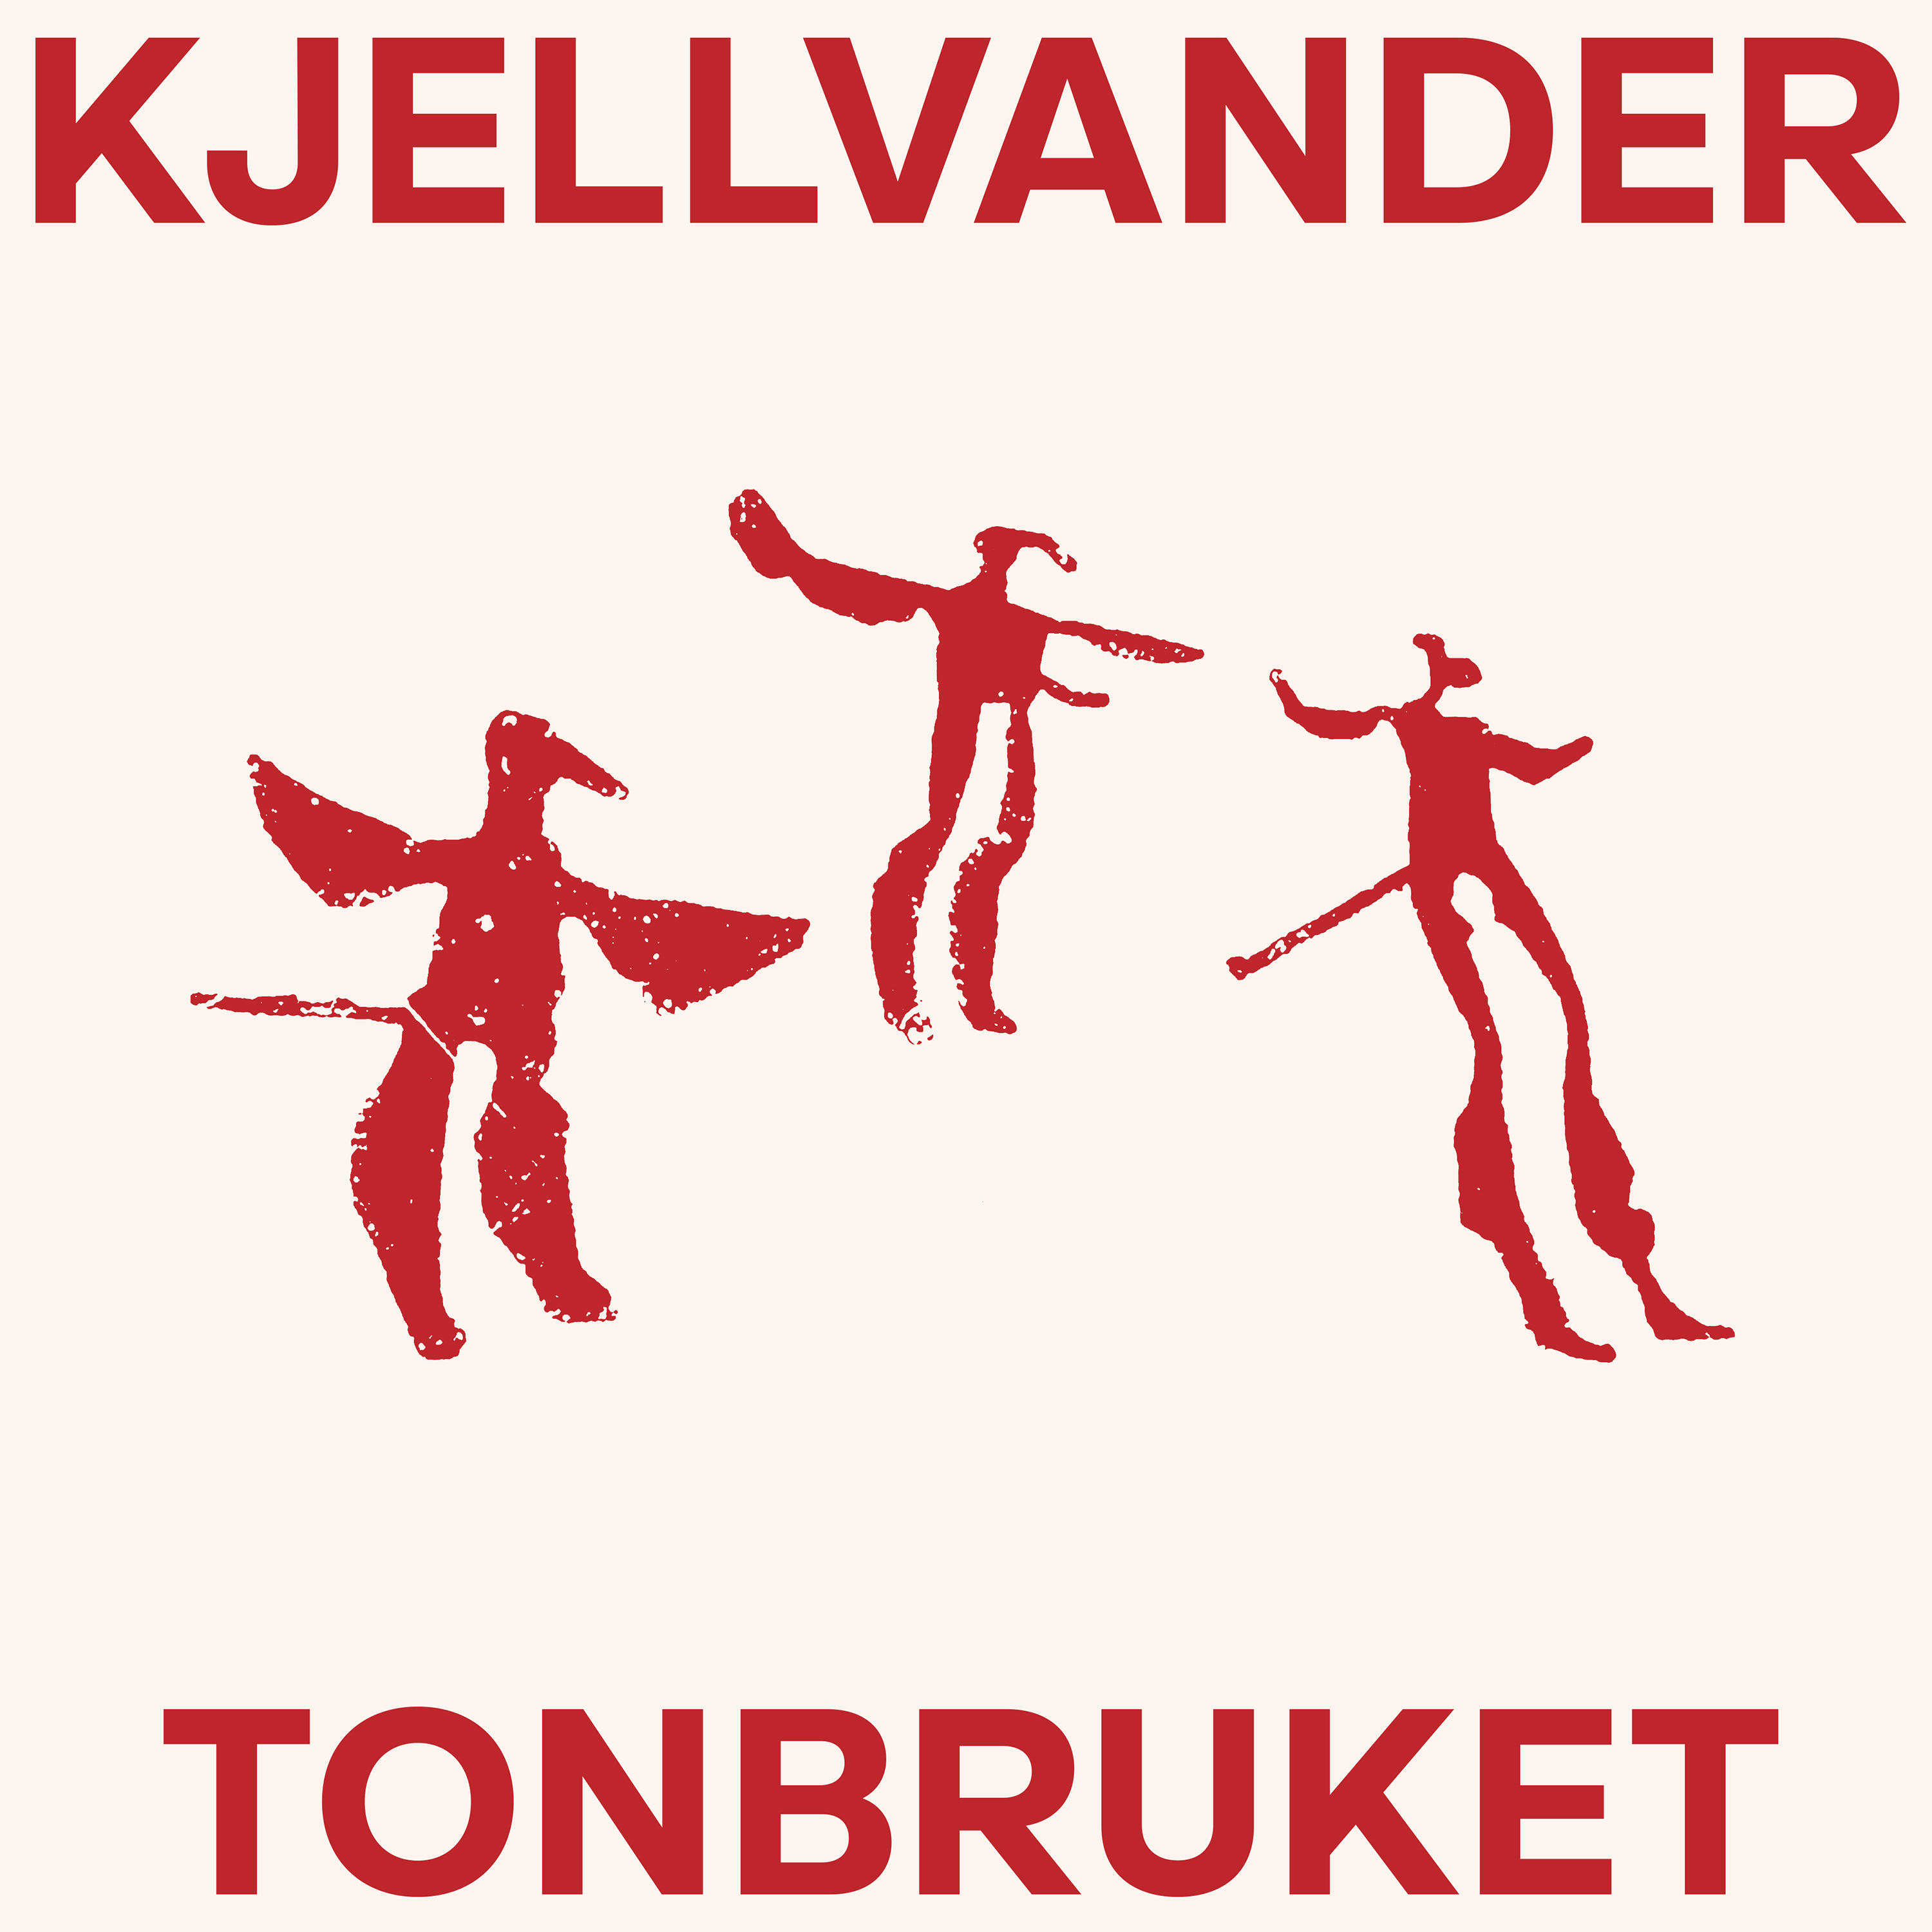 Kjellvandertonbruket - Fossils (Ltd Red Vinyl) - LP